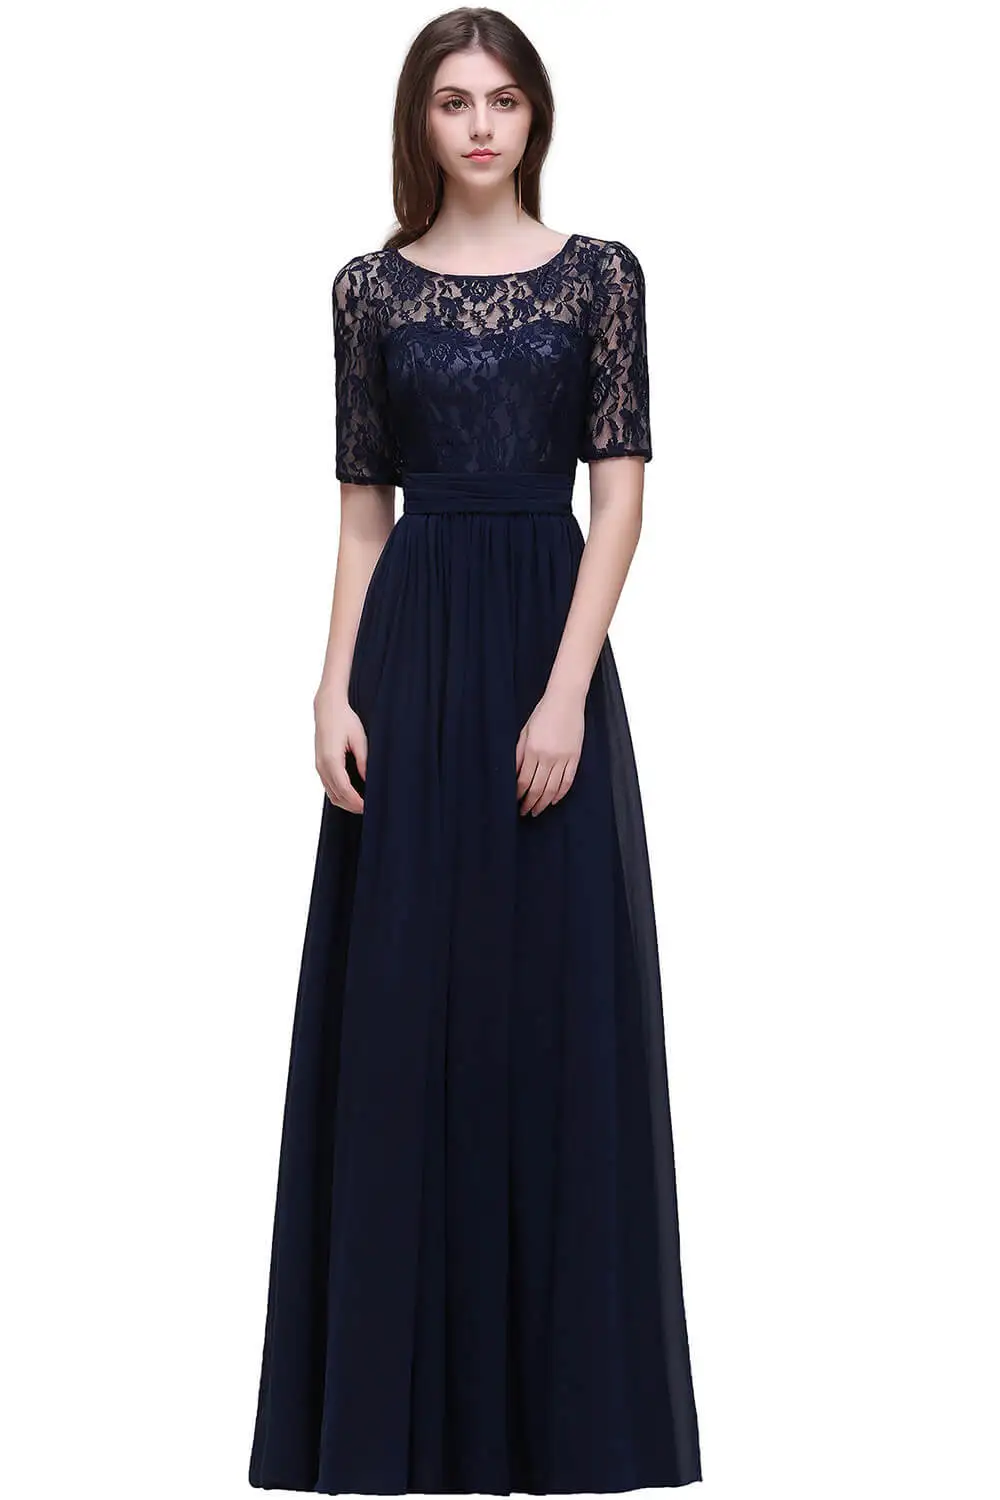 Vestido longo; элегантное, с рукавом до локтя Бургундия линия кружевное платье подружки невесты длинные 2019 шифон платья для выпускного в деловом